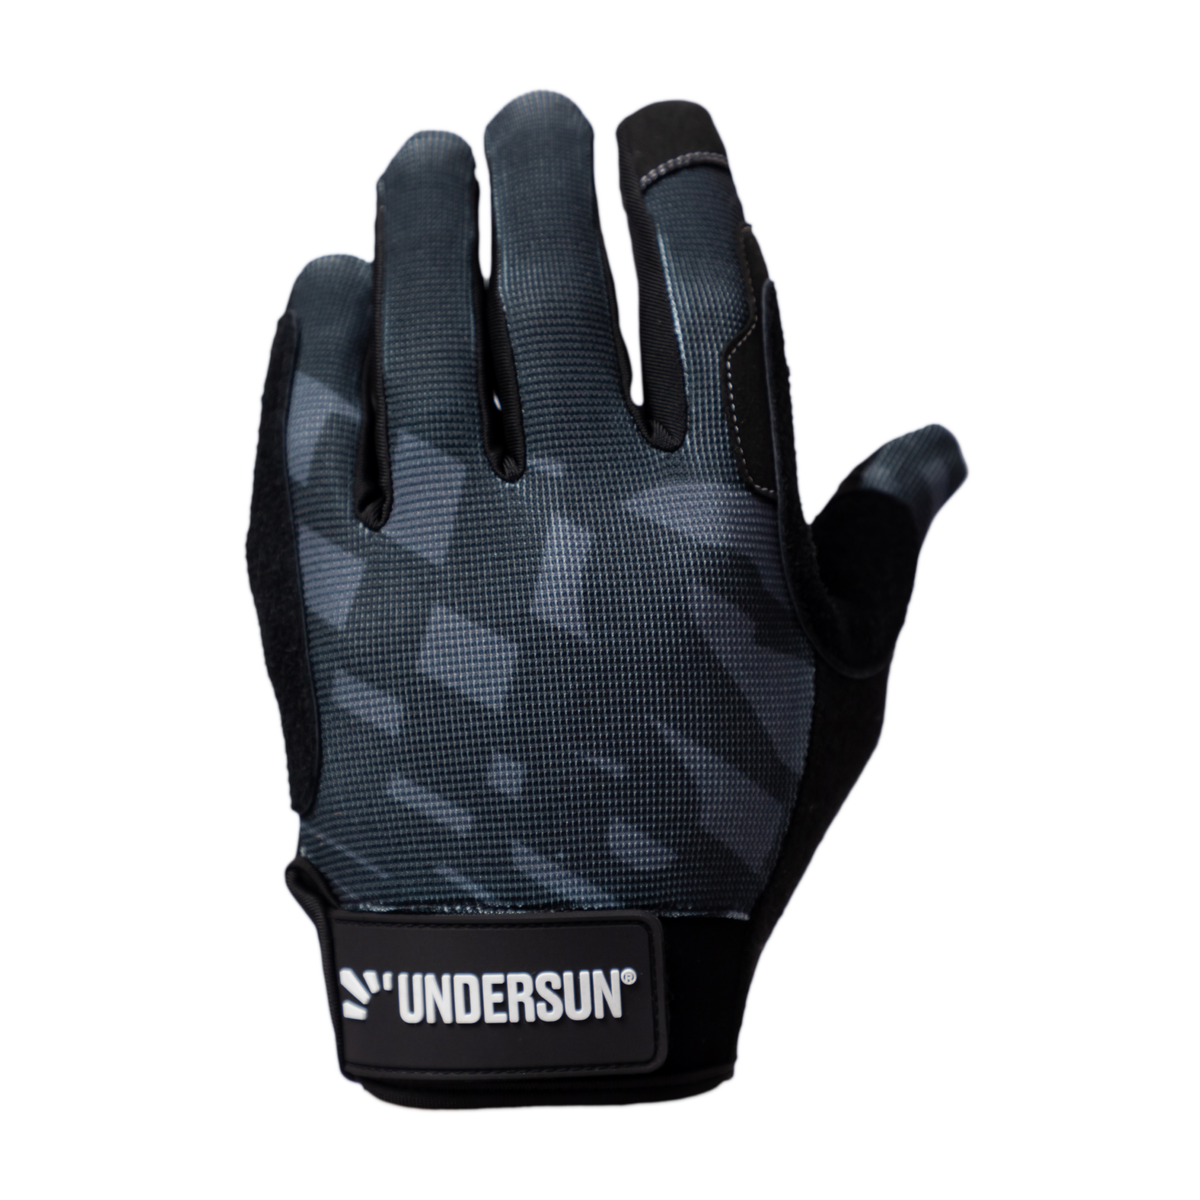 Undersun Workout Gloves